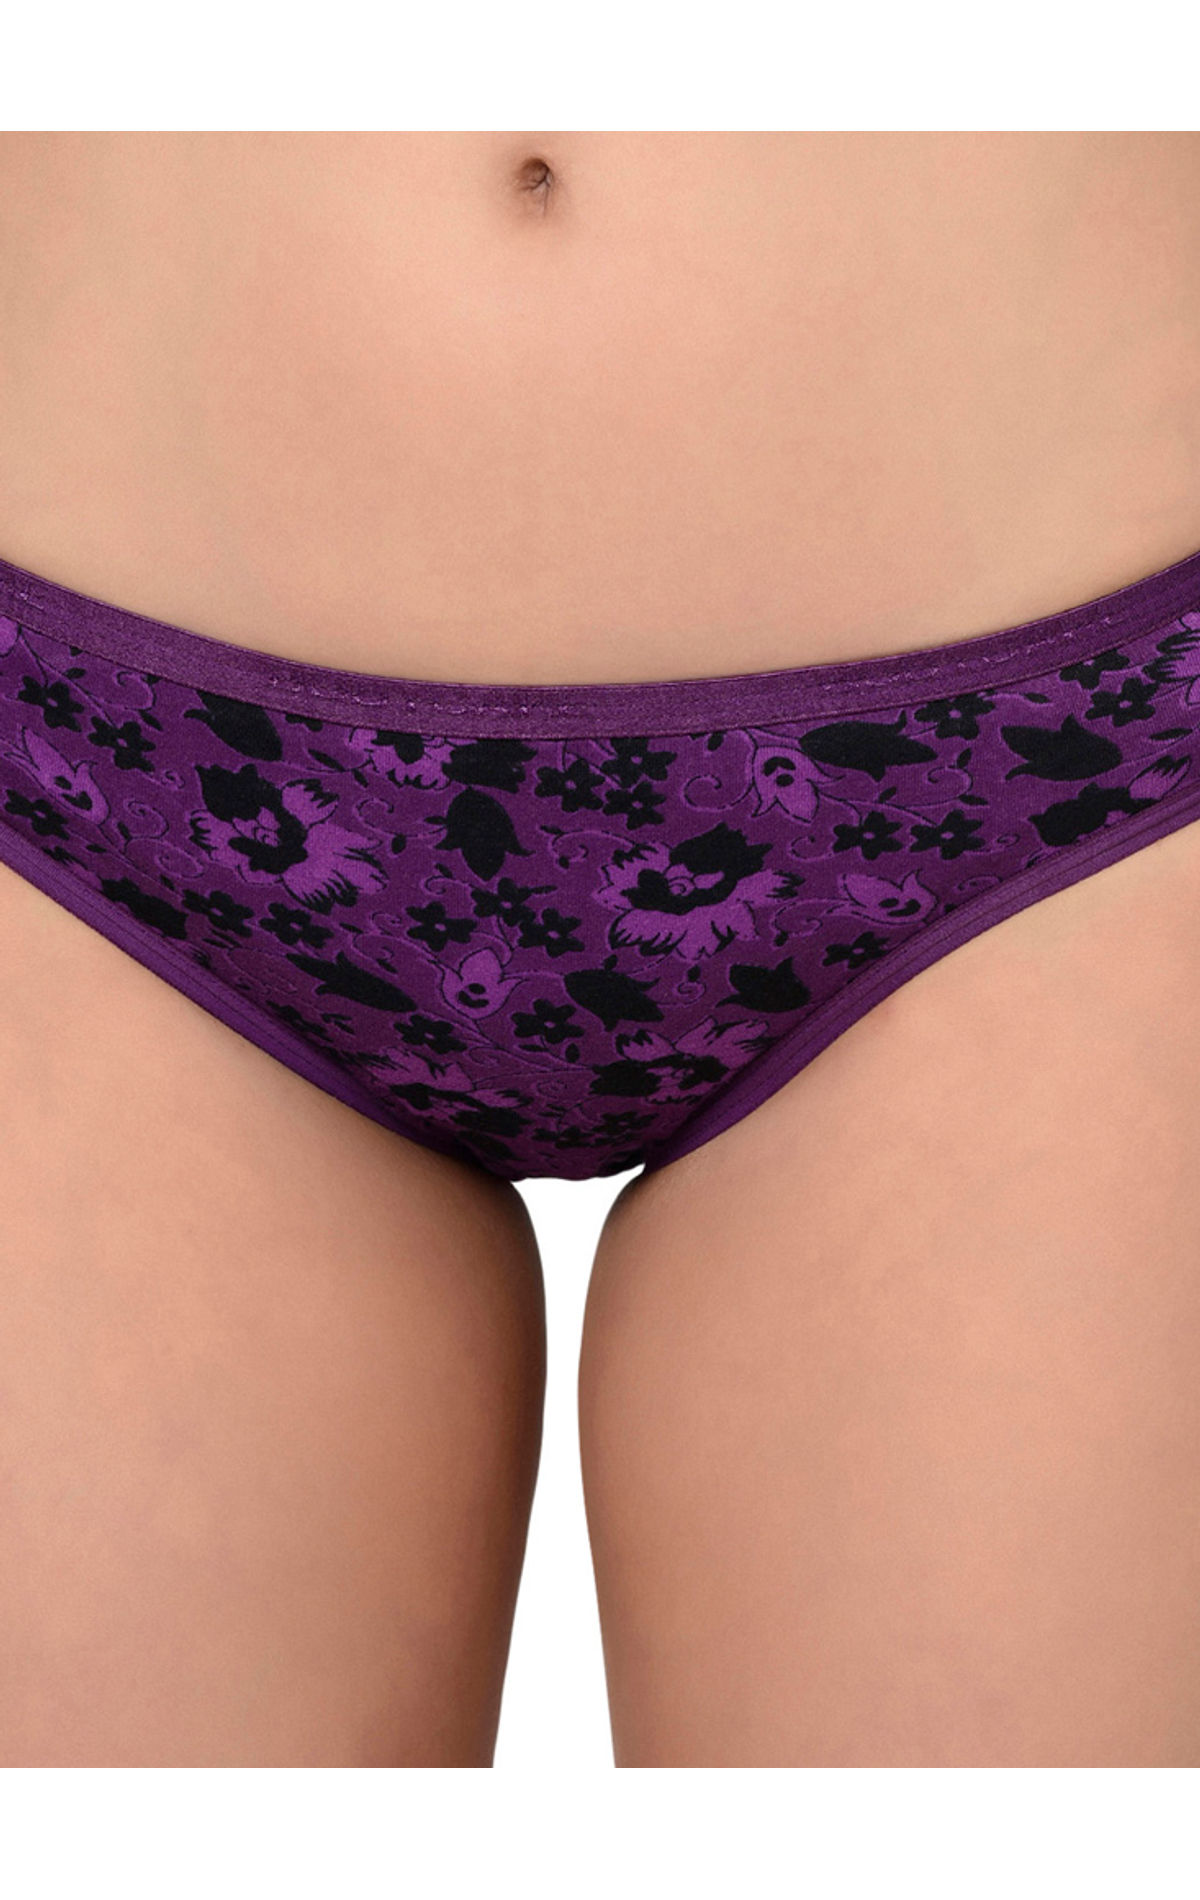 Purple Ladies Flower Printed Panty at Rs 35/piece in Mainpuri